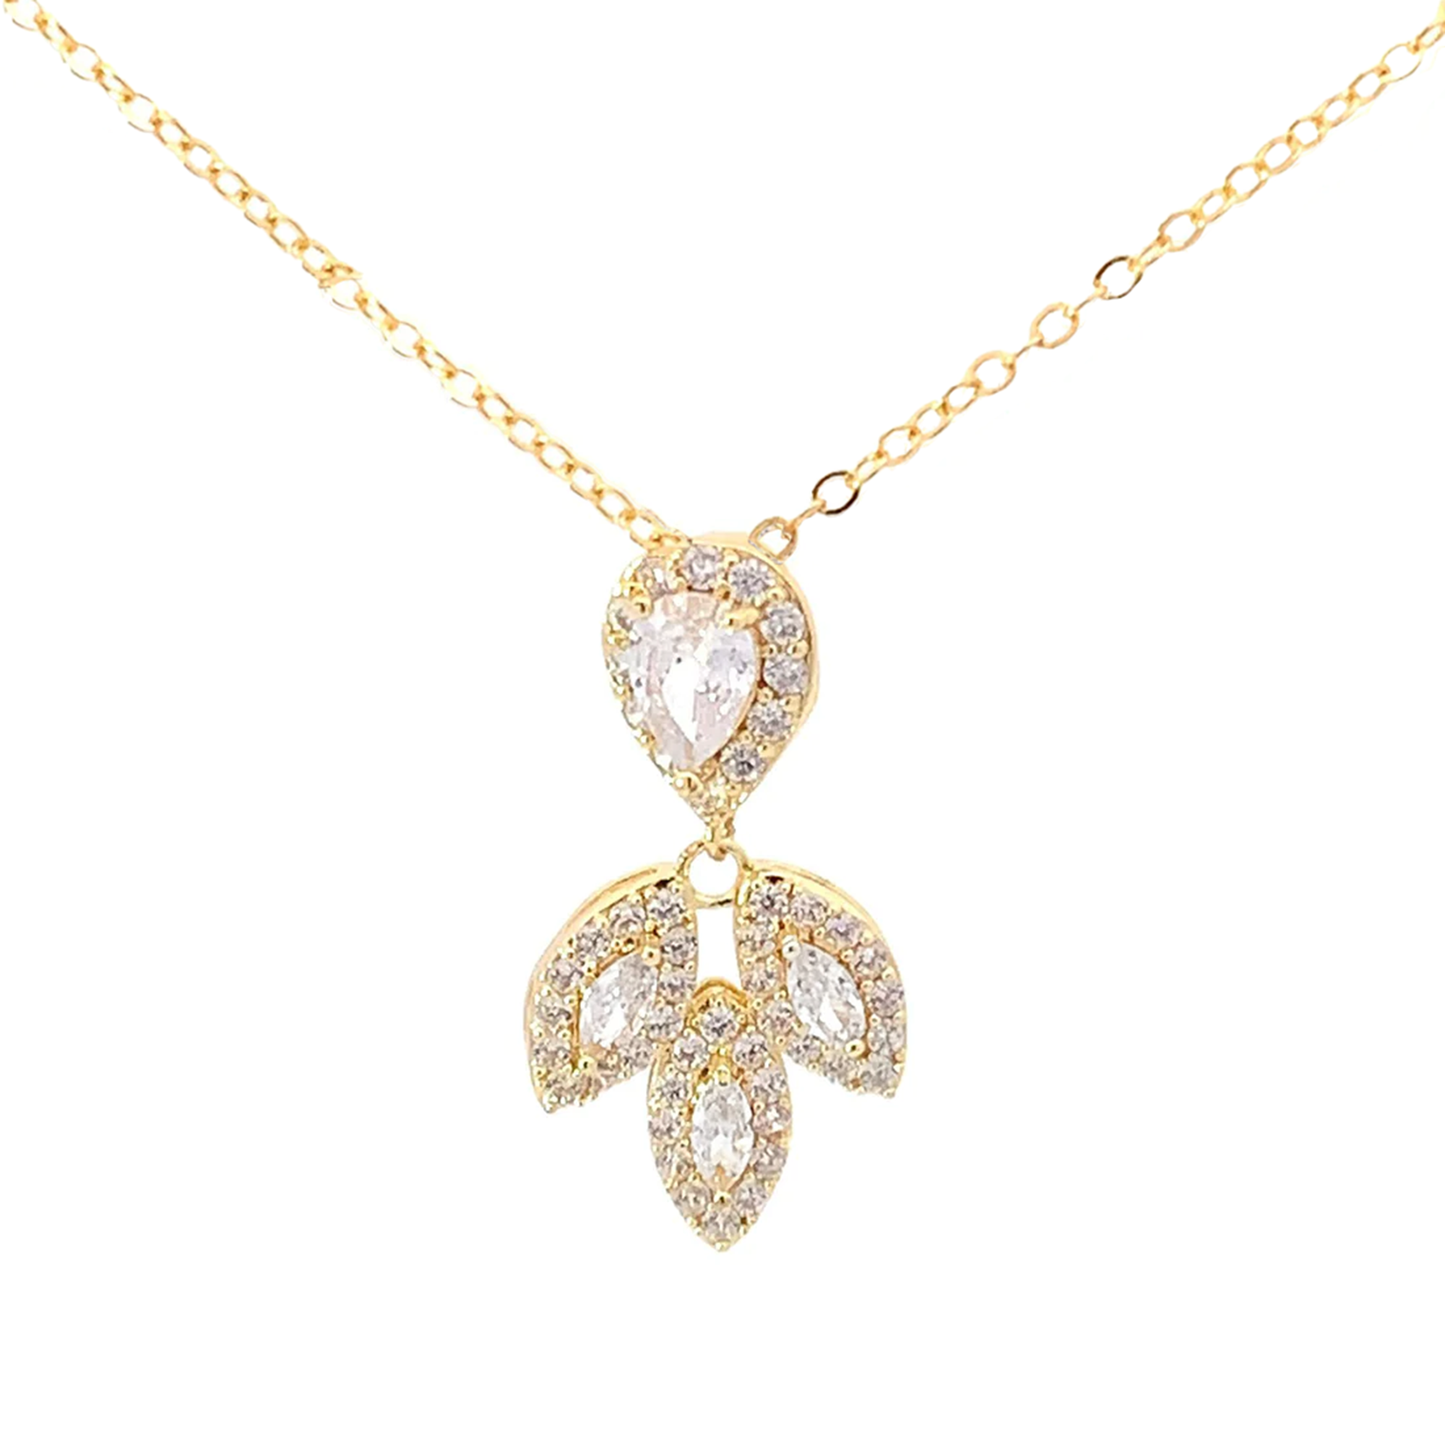 Laurel leaf bridal necklace gold